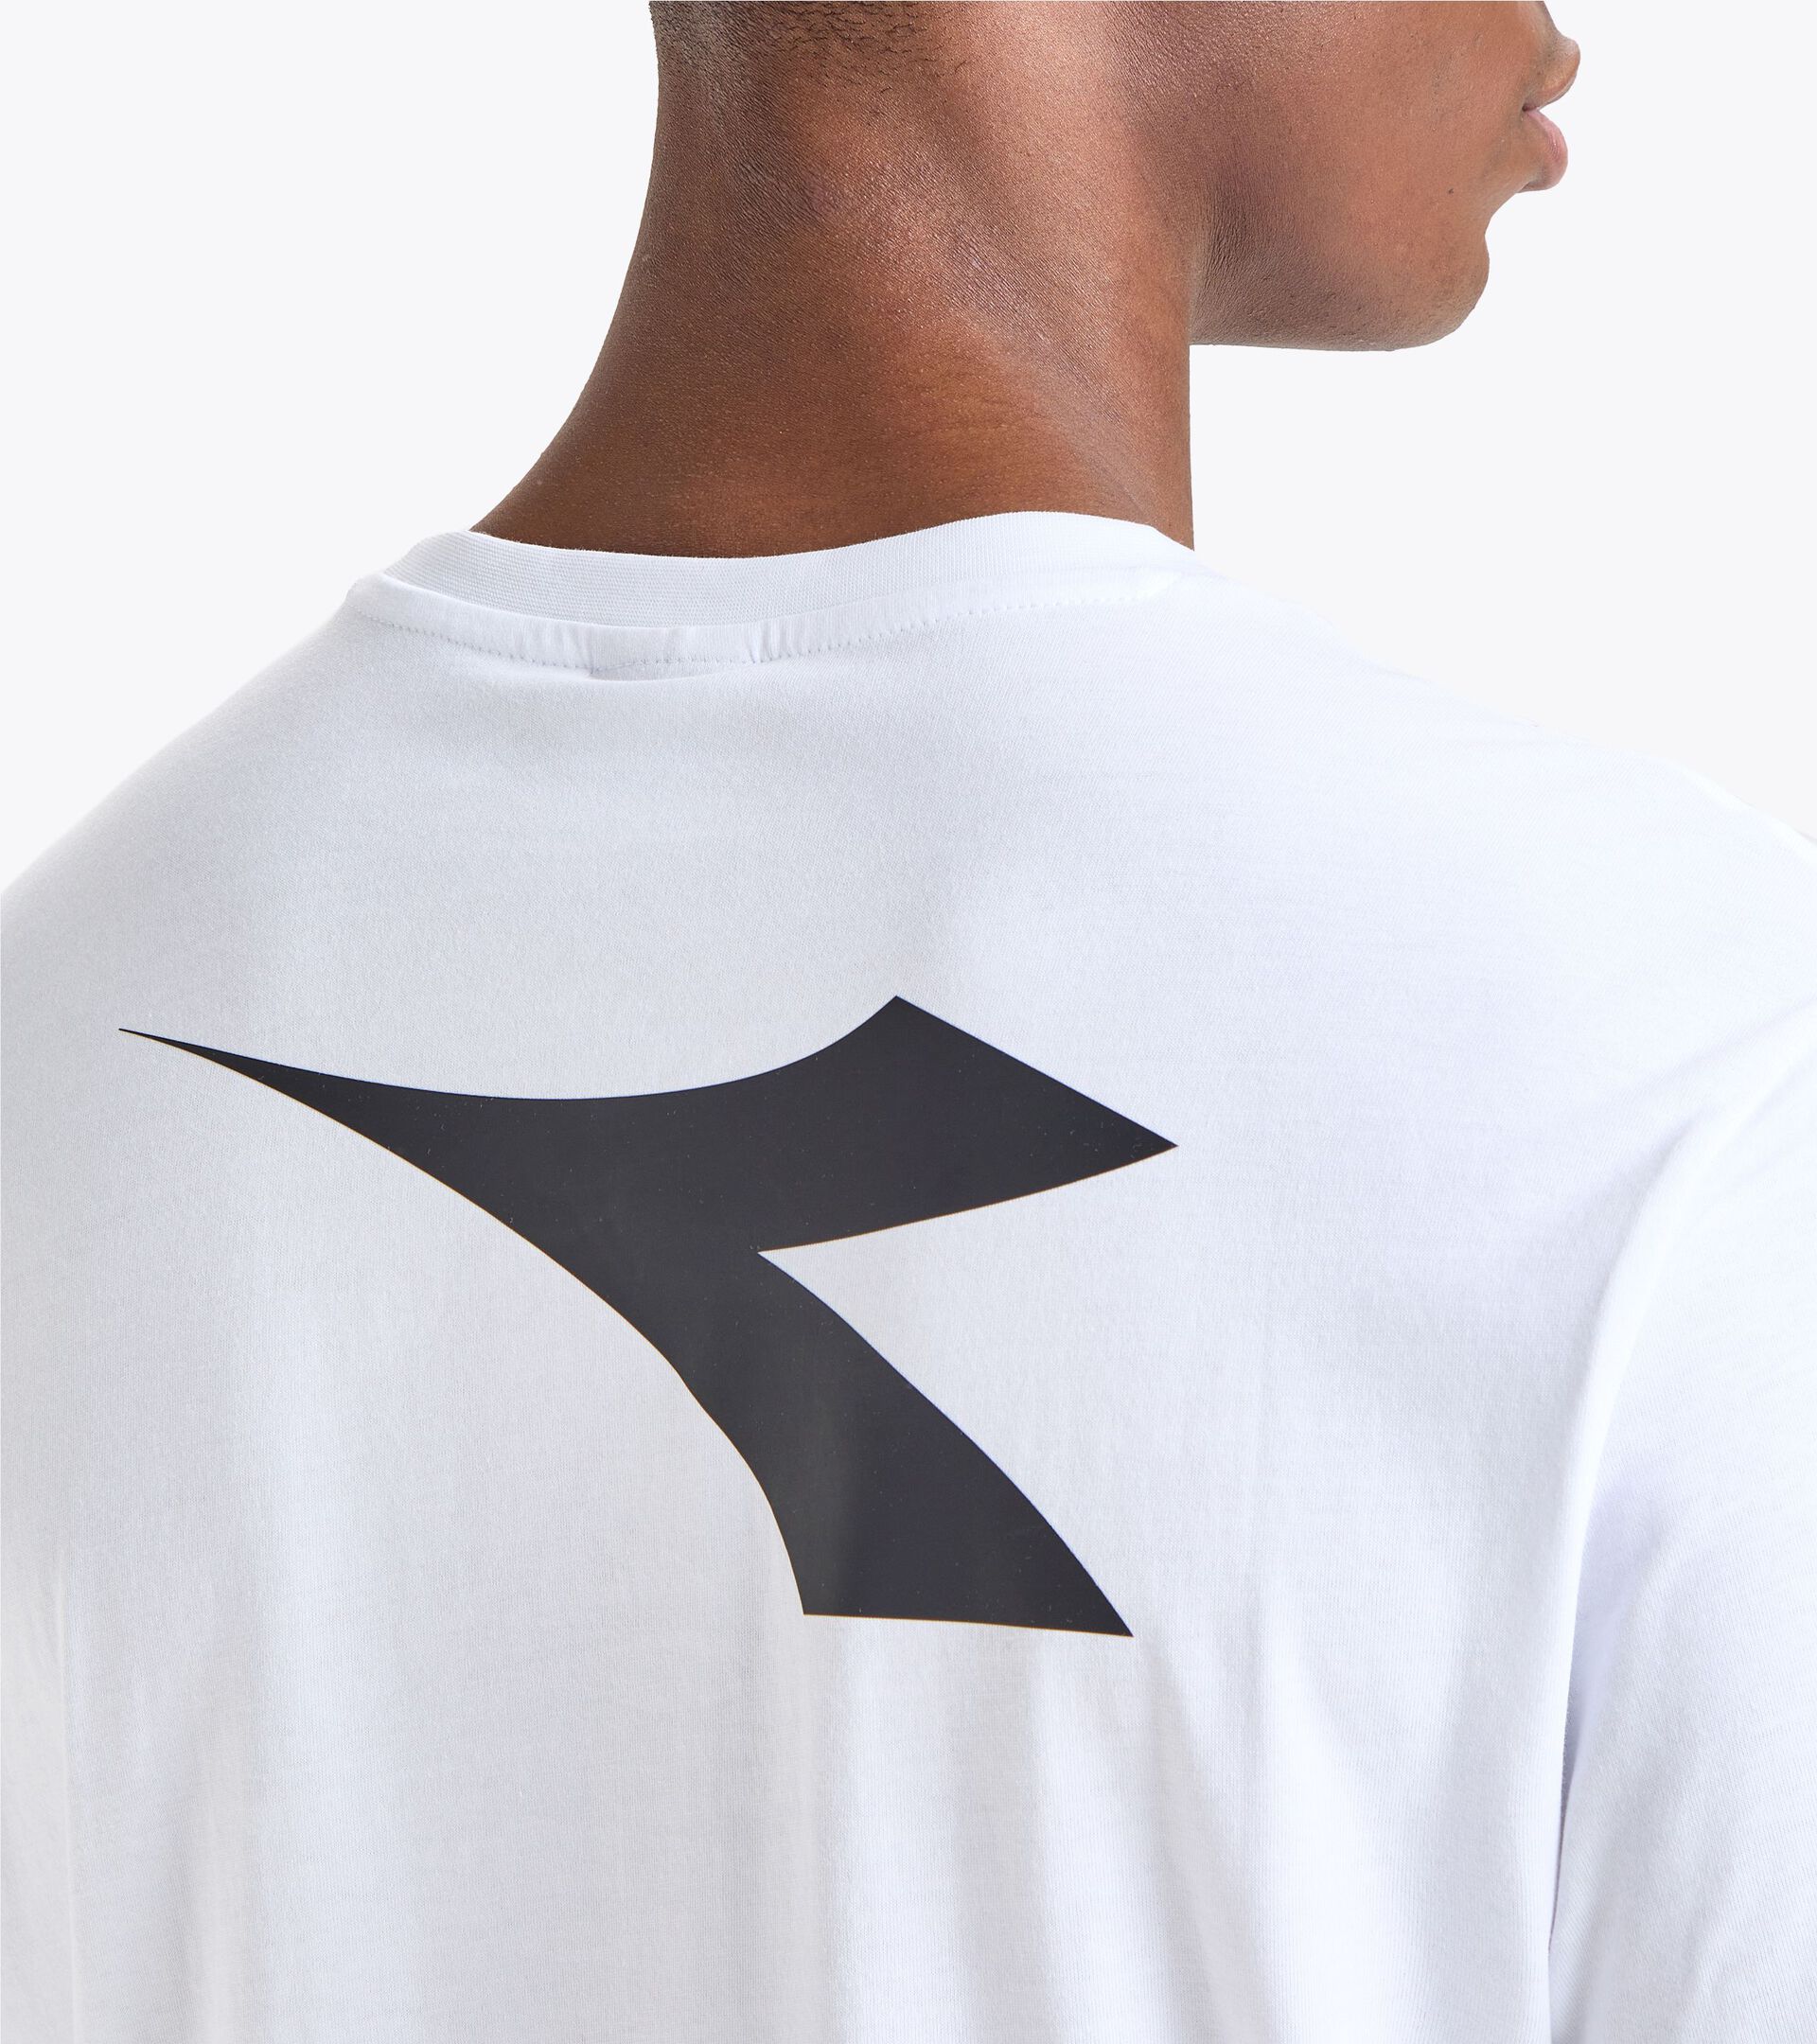 T-shirt de Représentation - Équipe Nationale de Beach Volley T-SHIRT RAPPRESENTANZA BV23 ITALIA BLANC VIF - Diadora